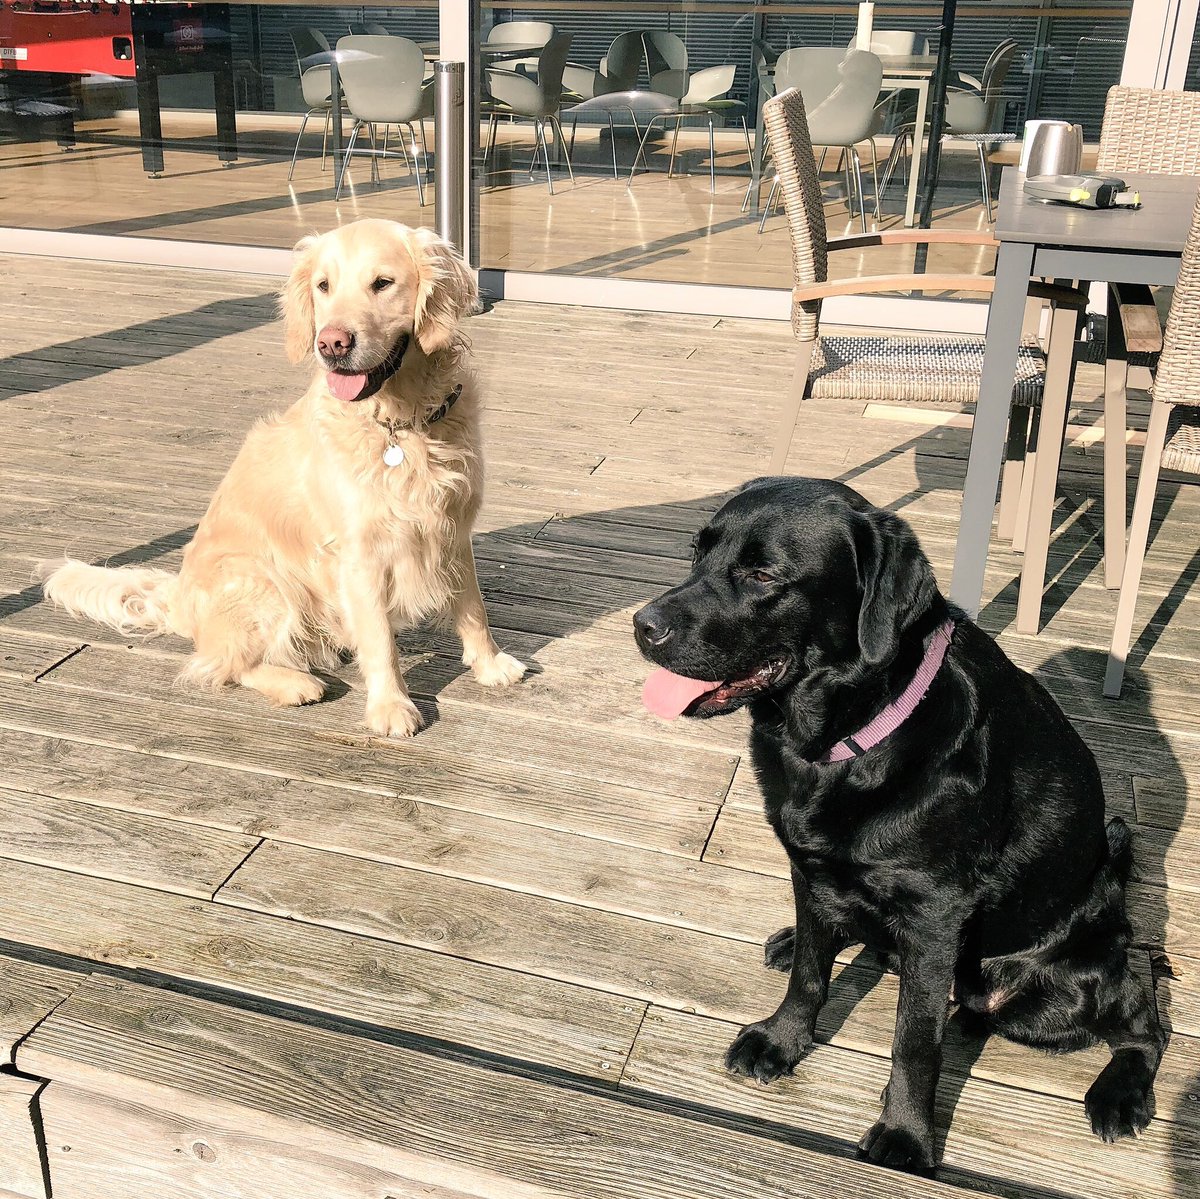 Unsere #Bürohunde (aka Feelgoodmanager) wissen, was gut ist: Sonne genießen auf unserer Dachterrasse! ☀️ #awesomecolleagues